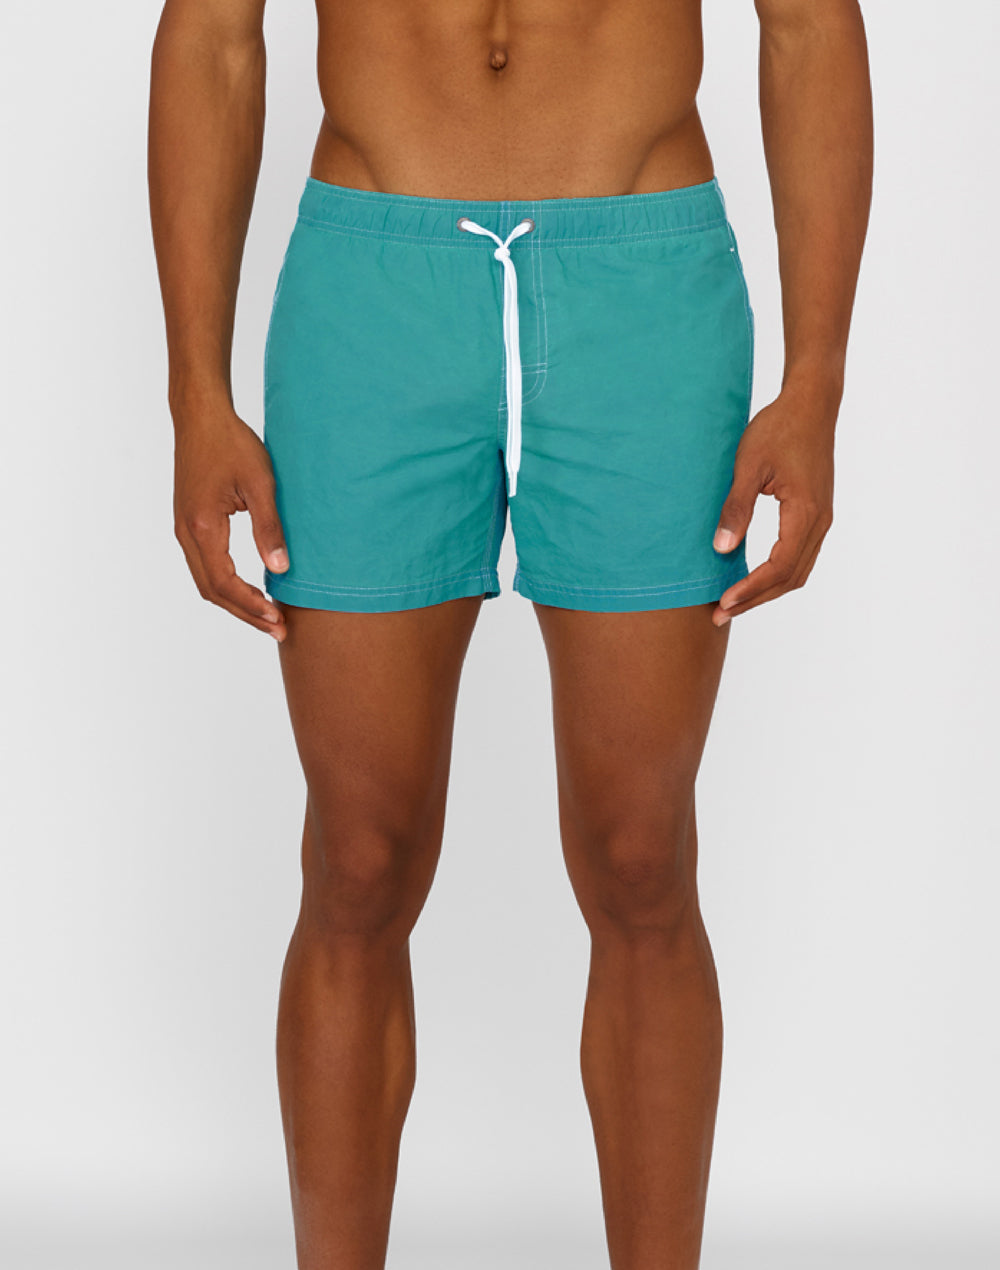 Sundek stone wash short swim shorts with an elasticated waistband